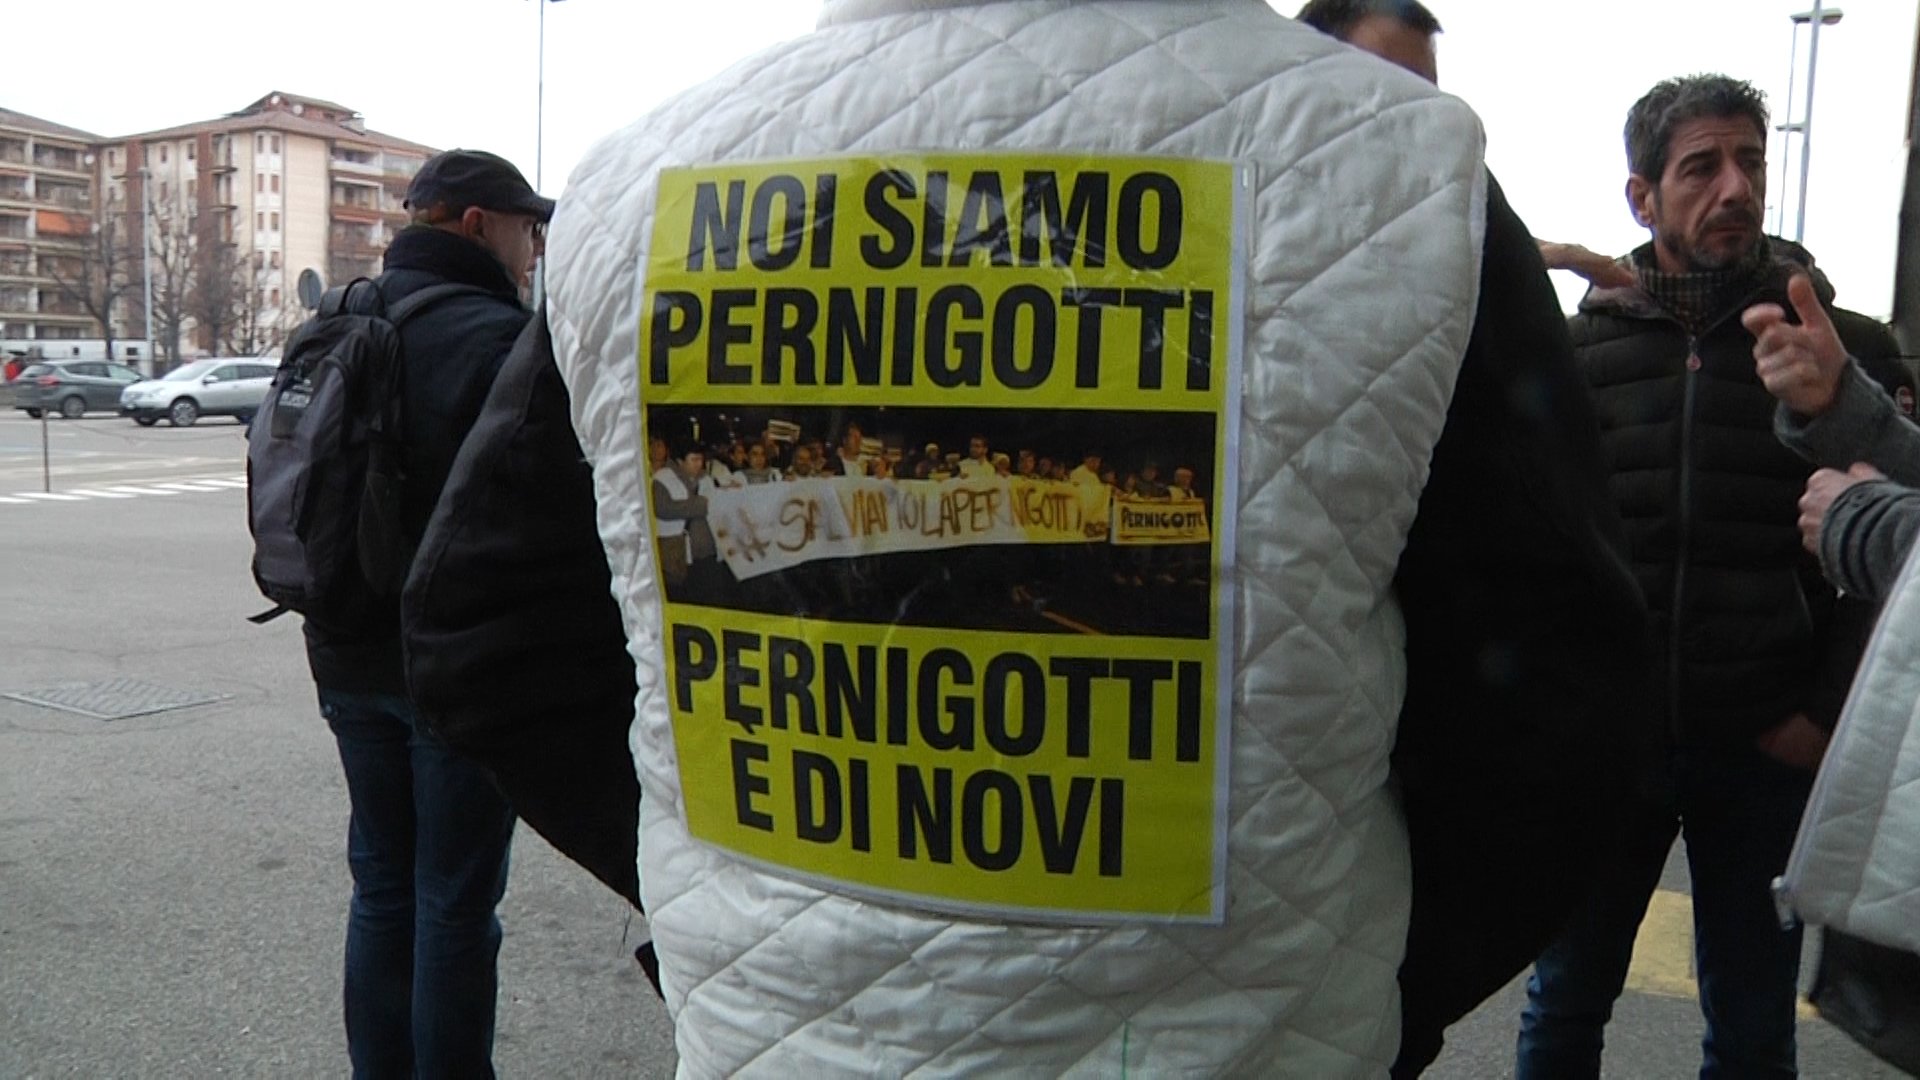 Lavoratori Pernigotti: “Siamo fiduciosi e la nostra battaglia andrà avanti”